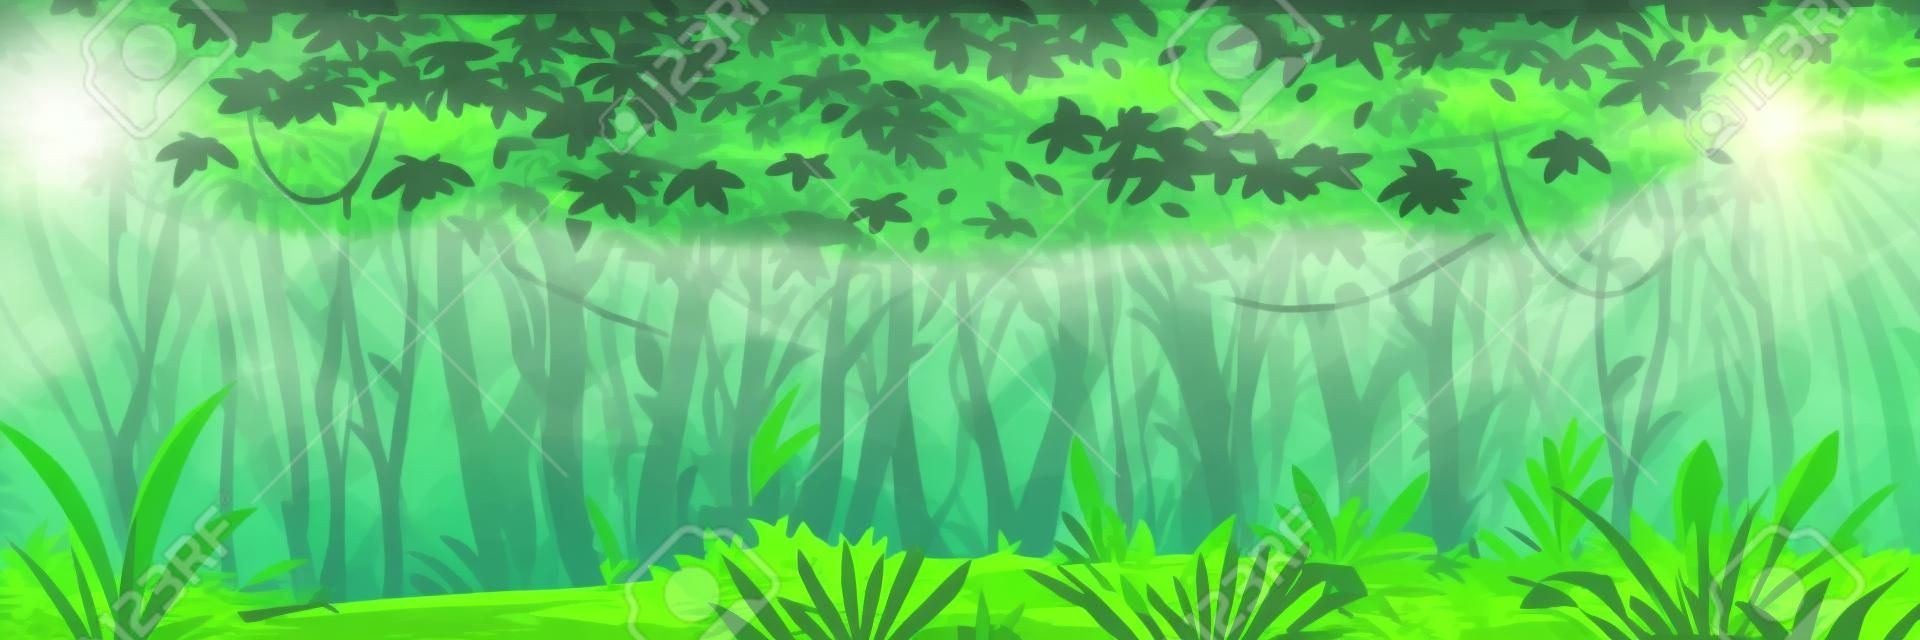 Wilder nasser dunkler Dschungelwald mit Bäumen, Büschen und Lianen, Naturlandschaft mit grünem Dschungellaub und exotischen Pflanzen, die auf dem Boden wachsen, horizontales Banner mit tropischen Pflanzen an sonnigen Tagen